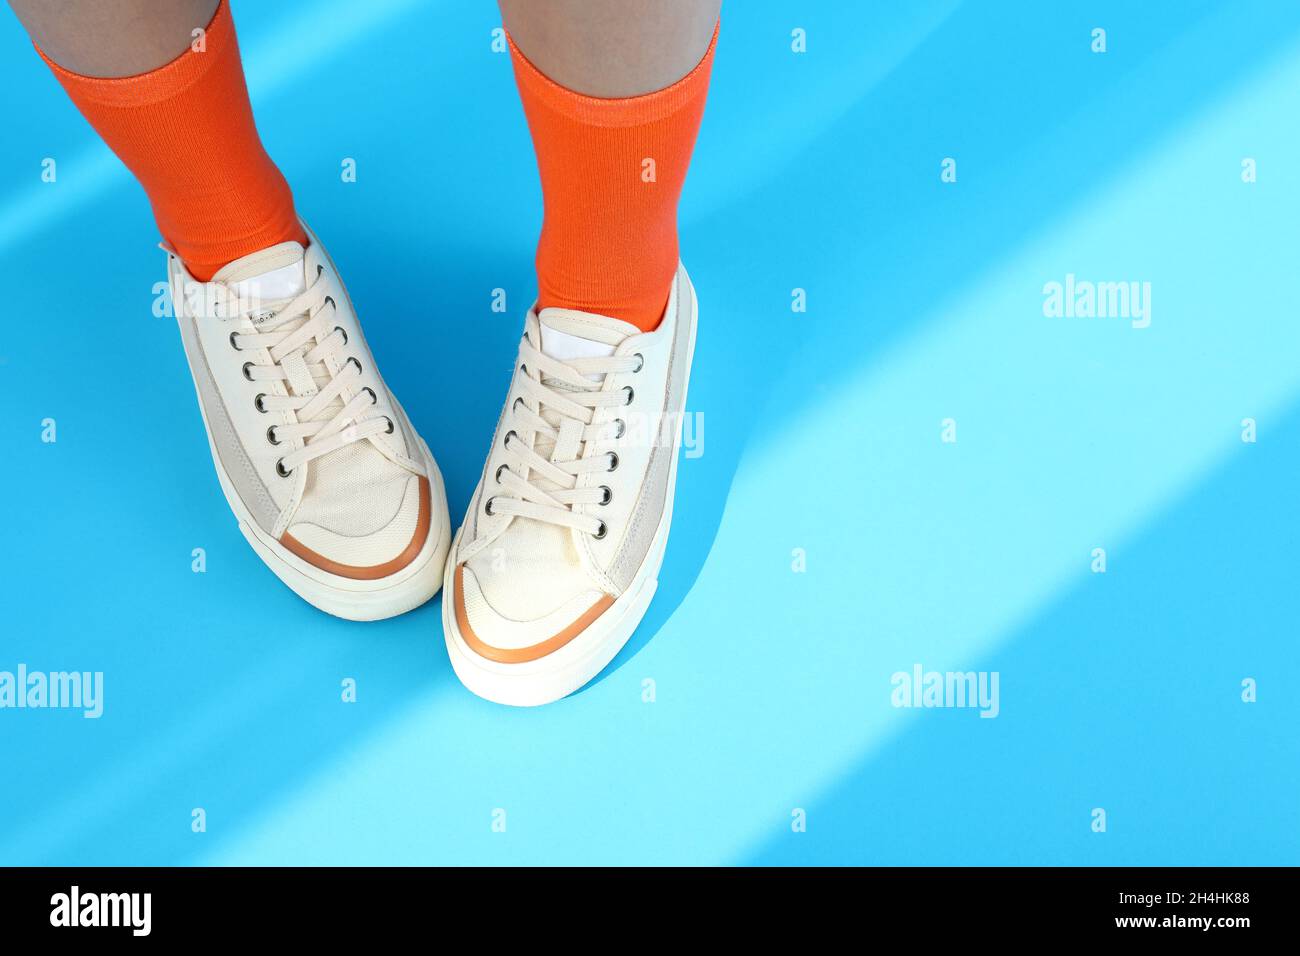 Piernas de mujer en calcetines naranjas y sneakers sobre fondo azul Foto de stock